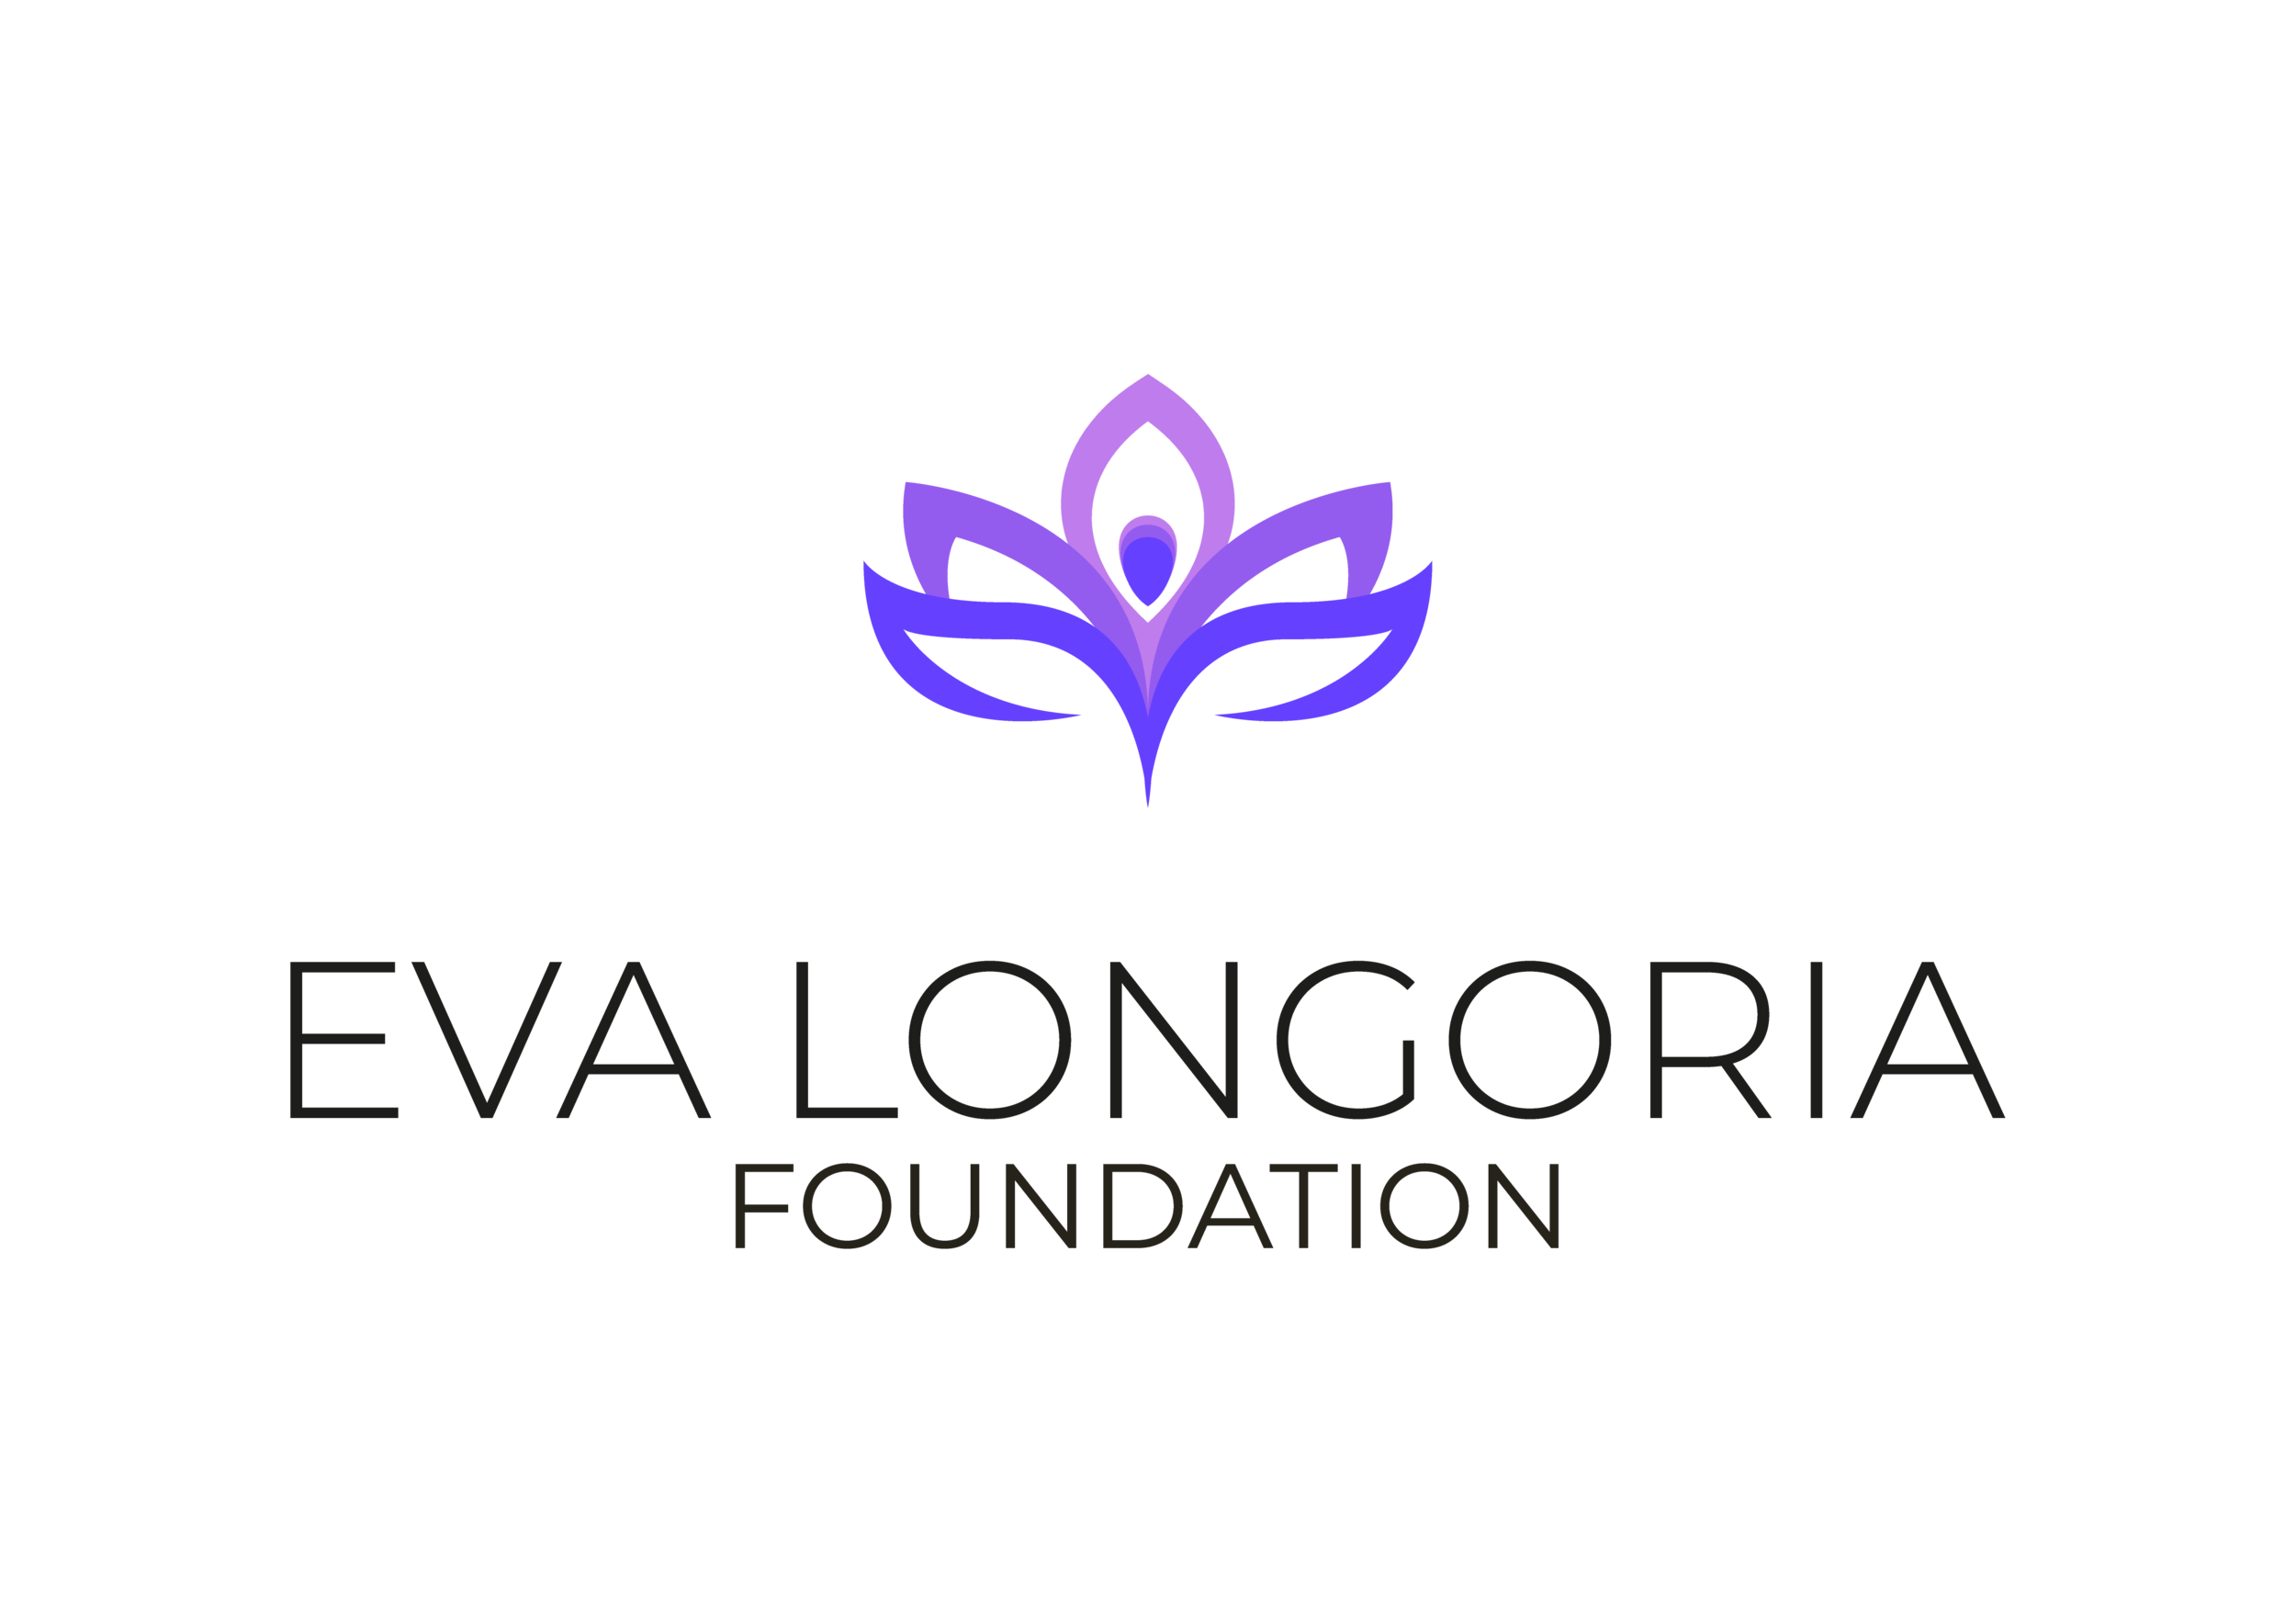 Eva Longoria Foundation Logo.png